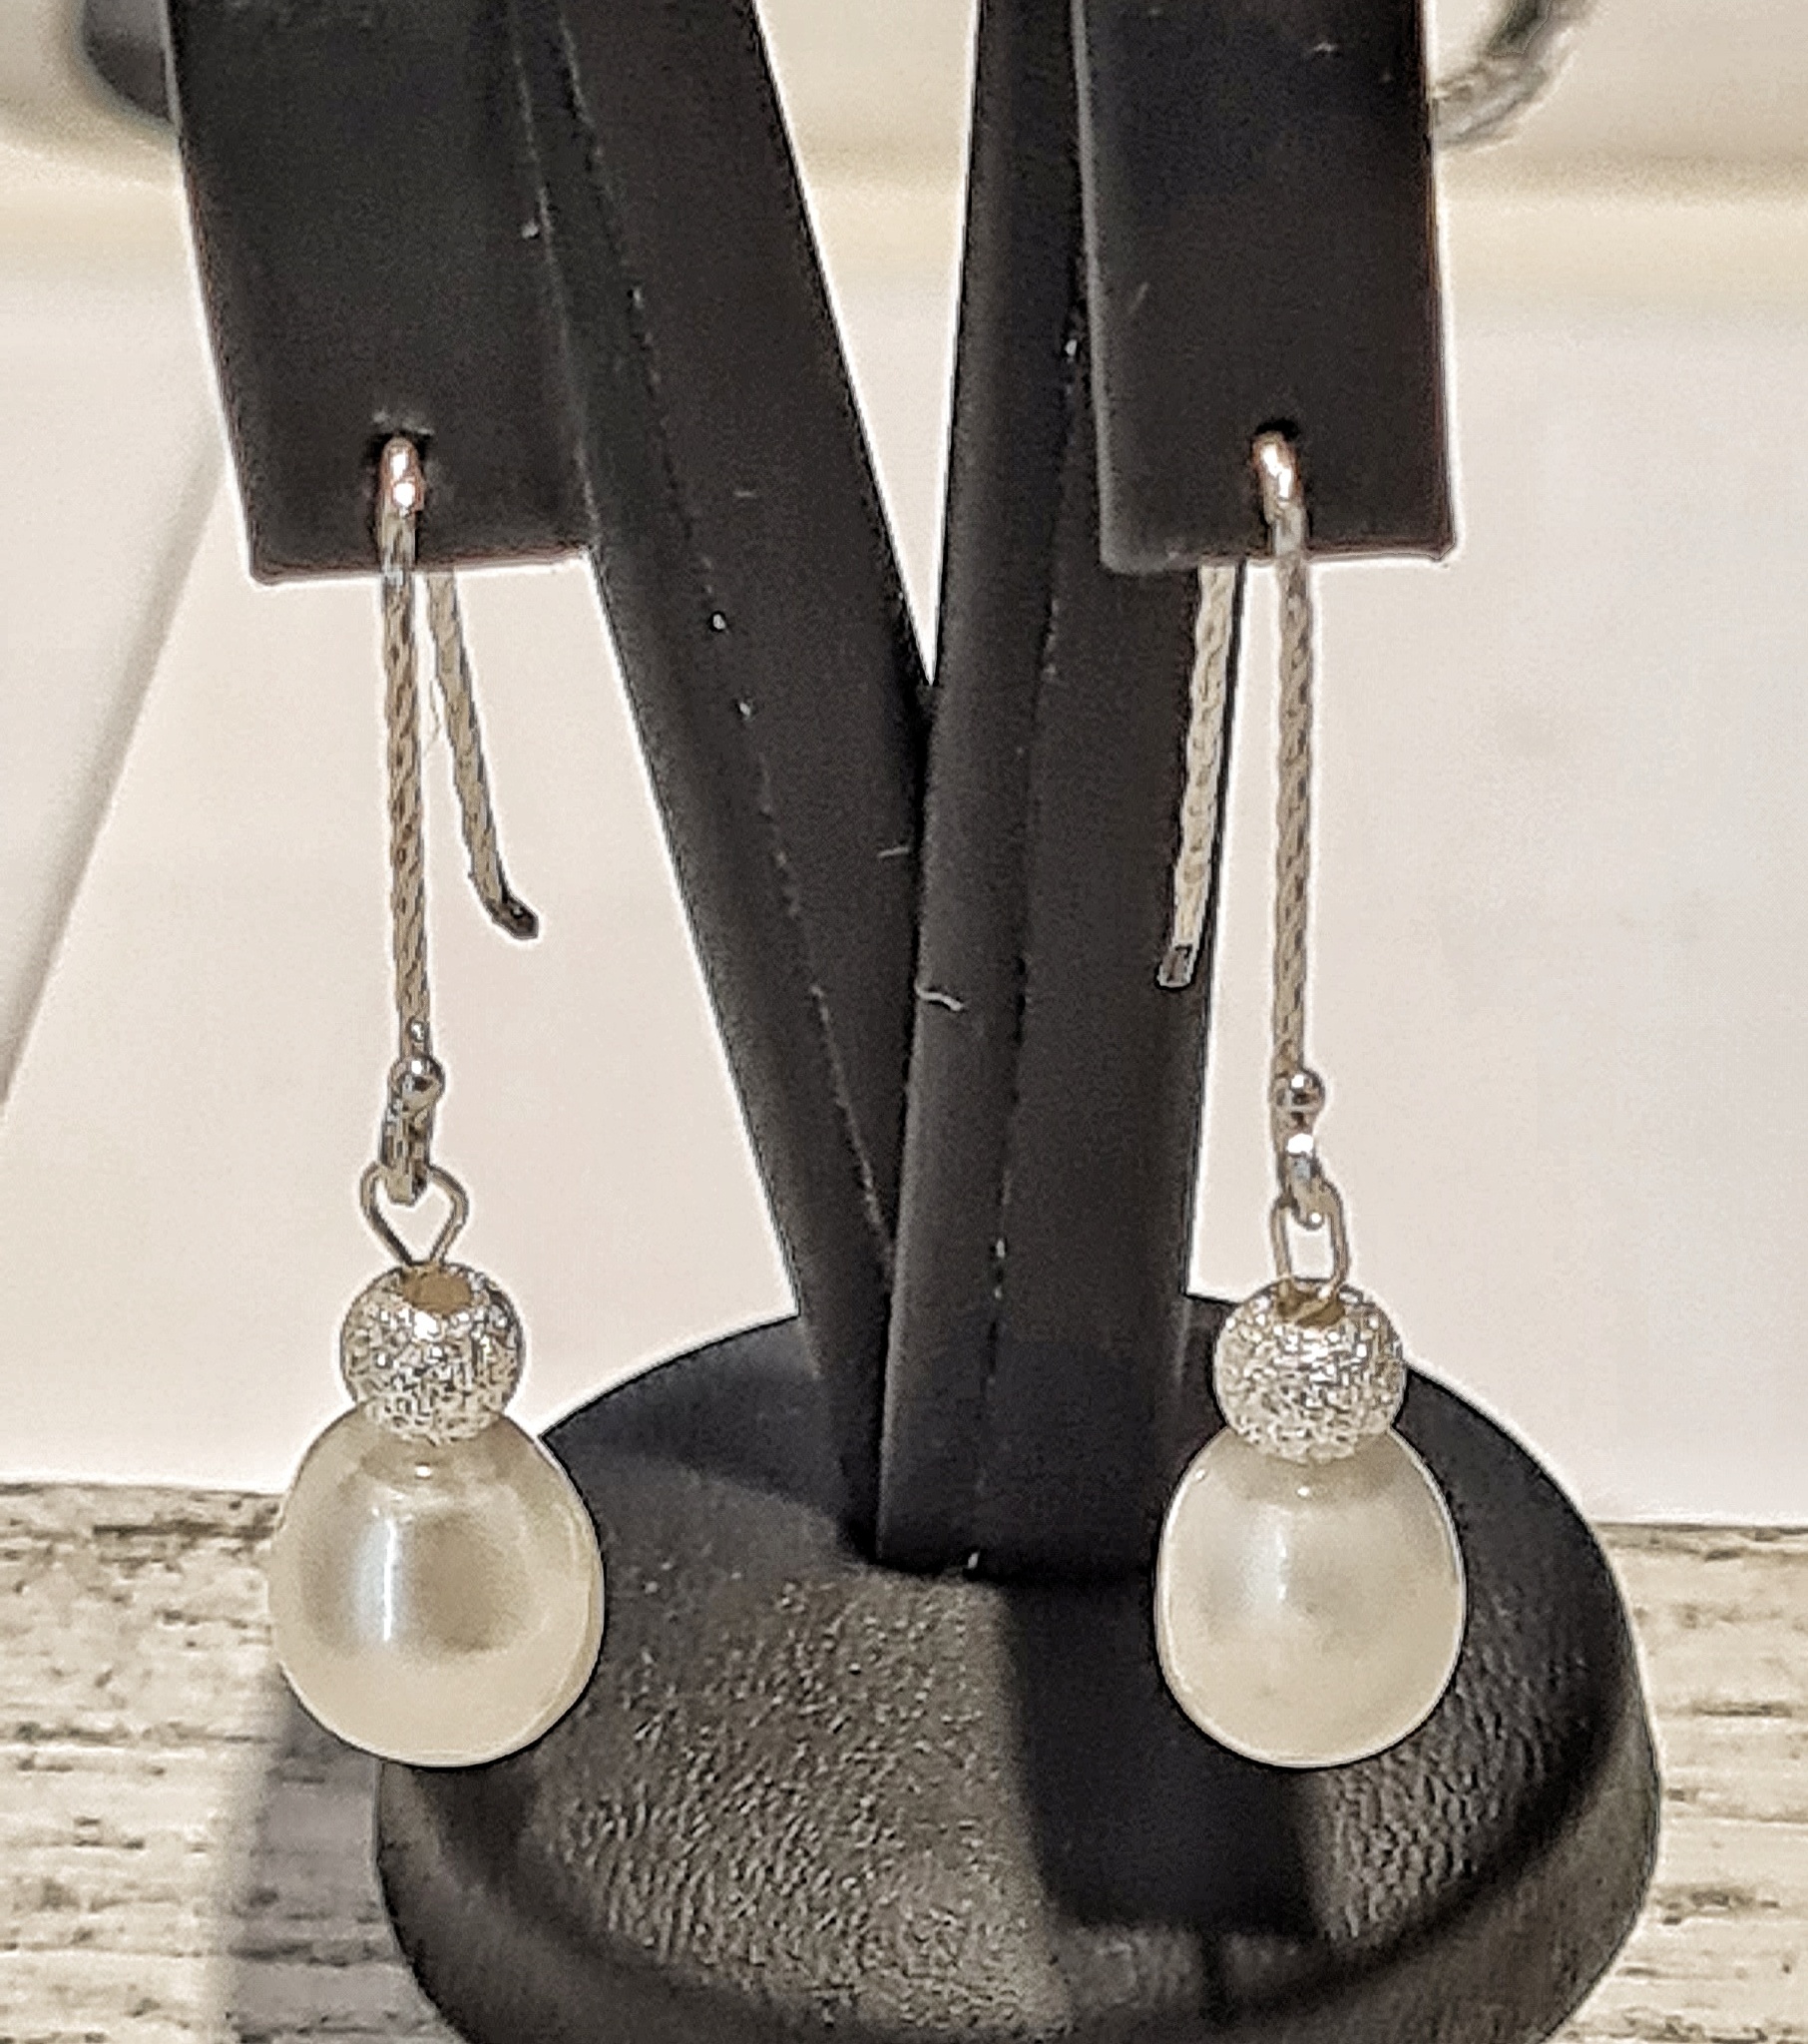 Pärla örhänge i silver och med äkta sötvattenspärla. Smycken i silver från Alv Design